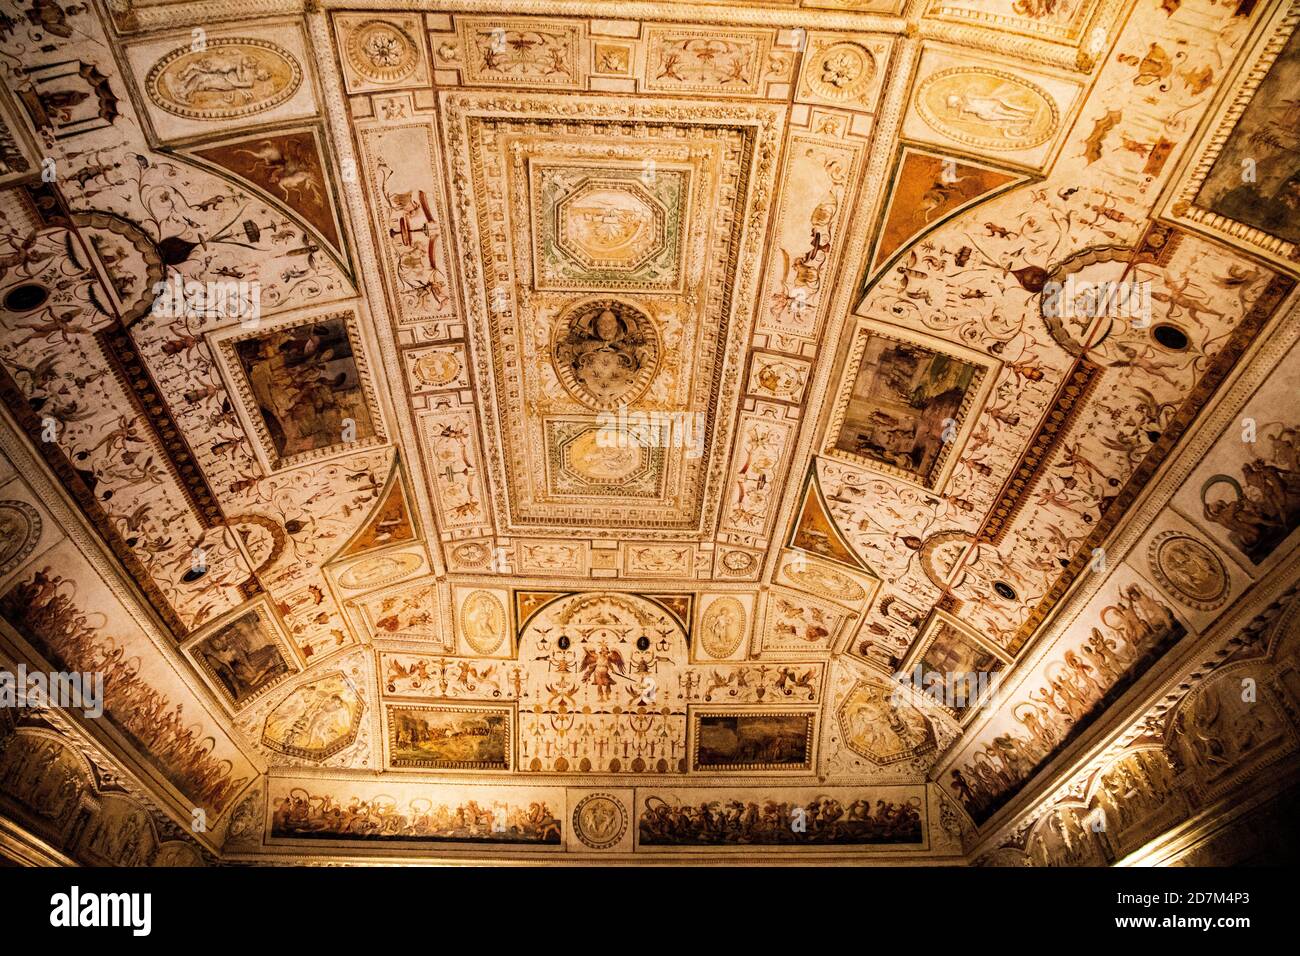 La Bibliothèque - Sala della Biblioteca à CastelSant'Angelo Rome Vatican Italie Banque D'Images